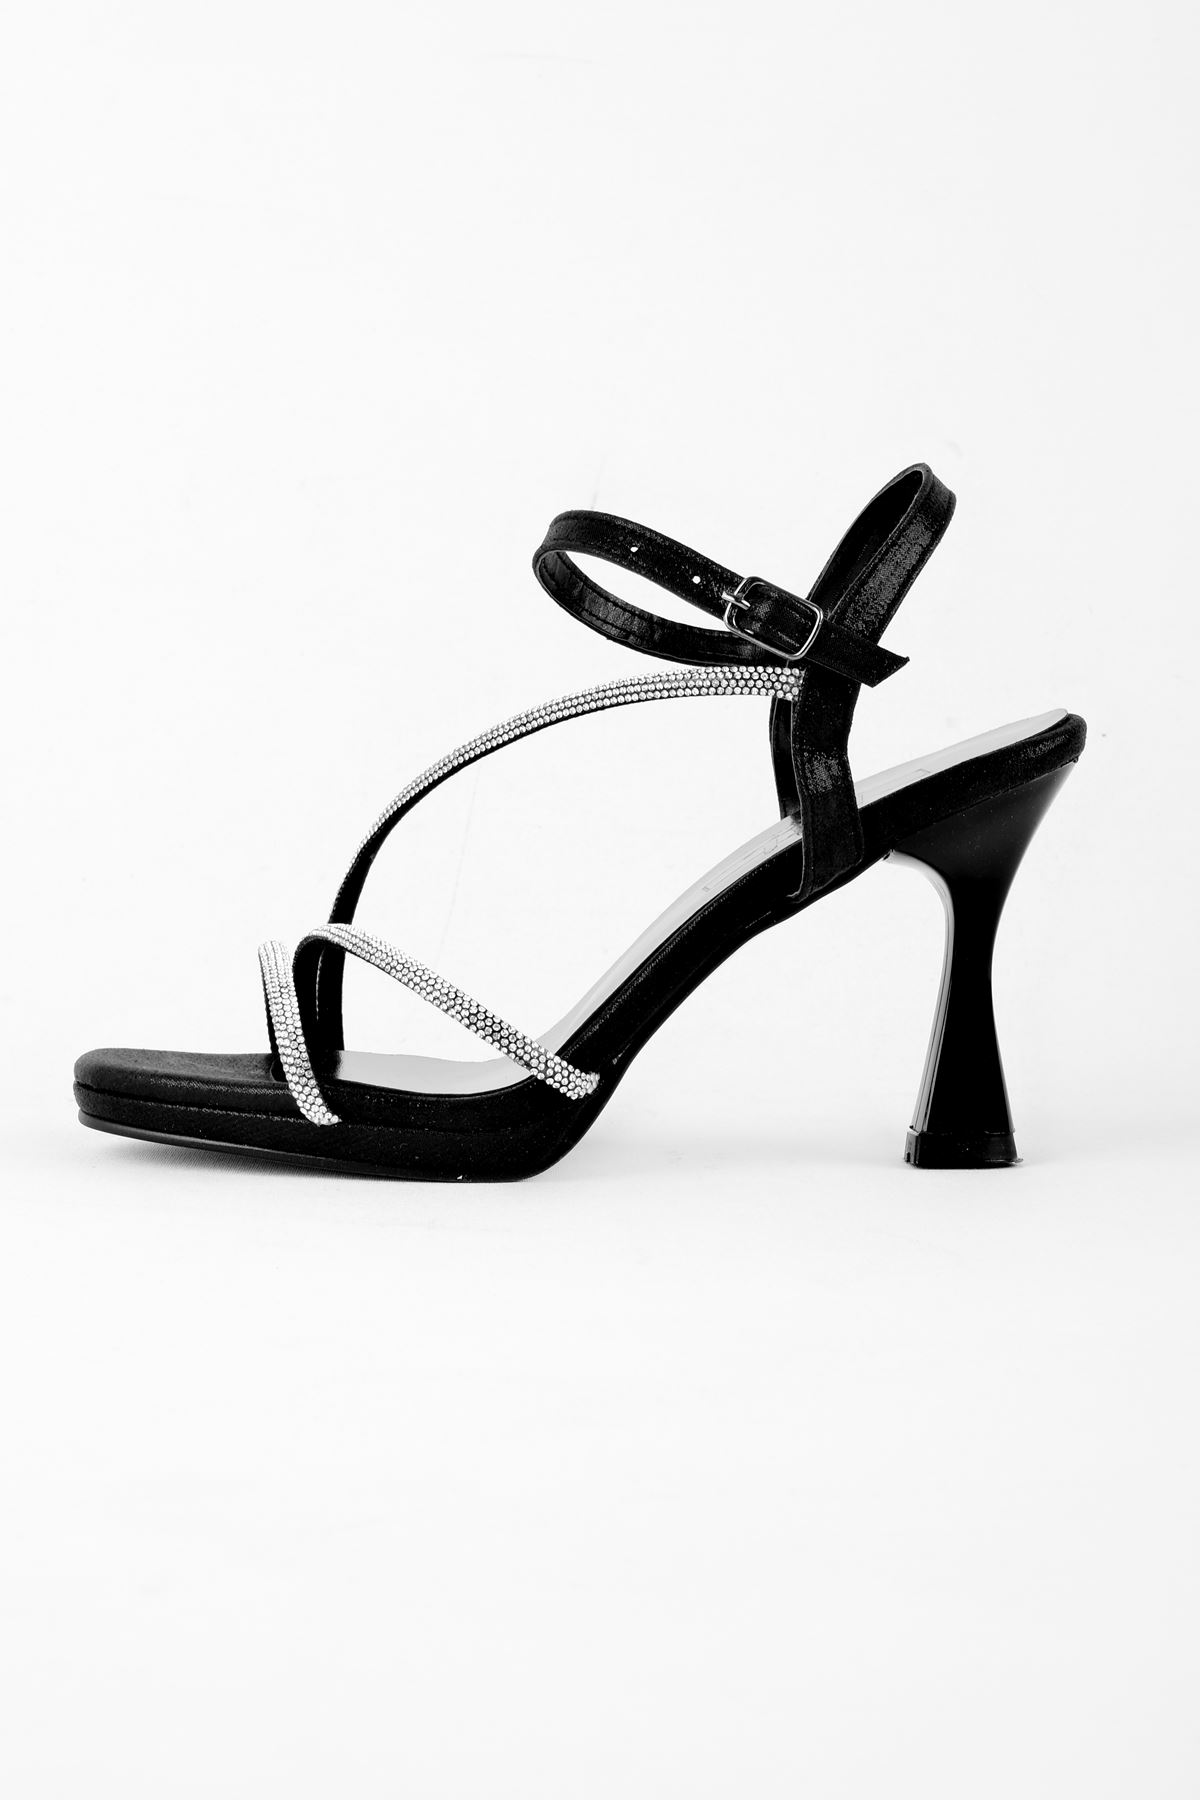 Mosera Kadın Topuklu Ayakkabı Taşlı Çapraz Bantlı Platform Detaylı-siyah